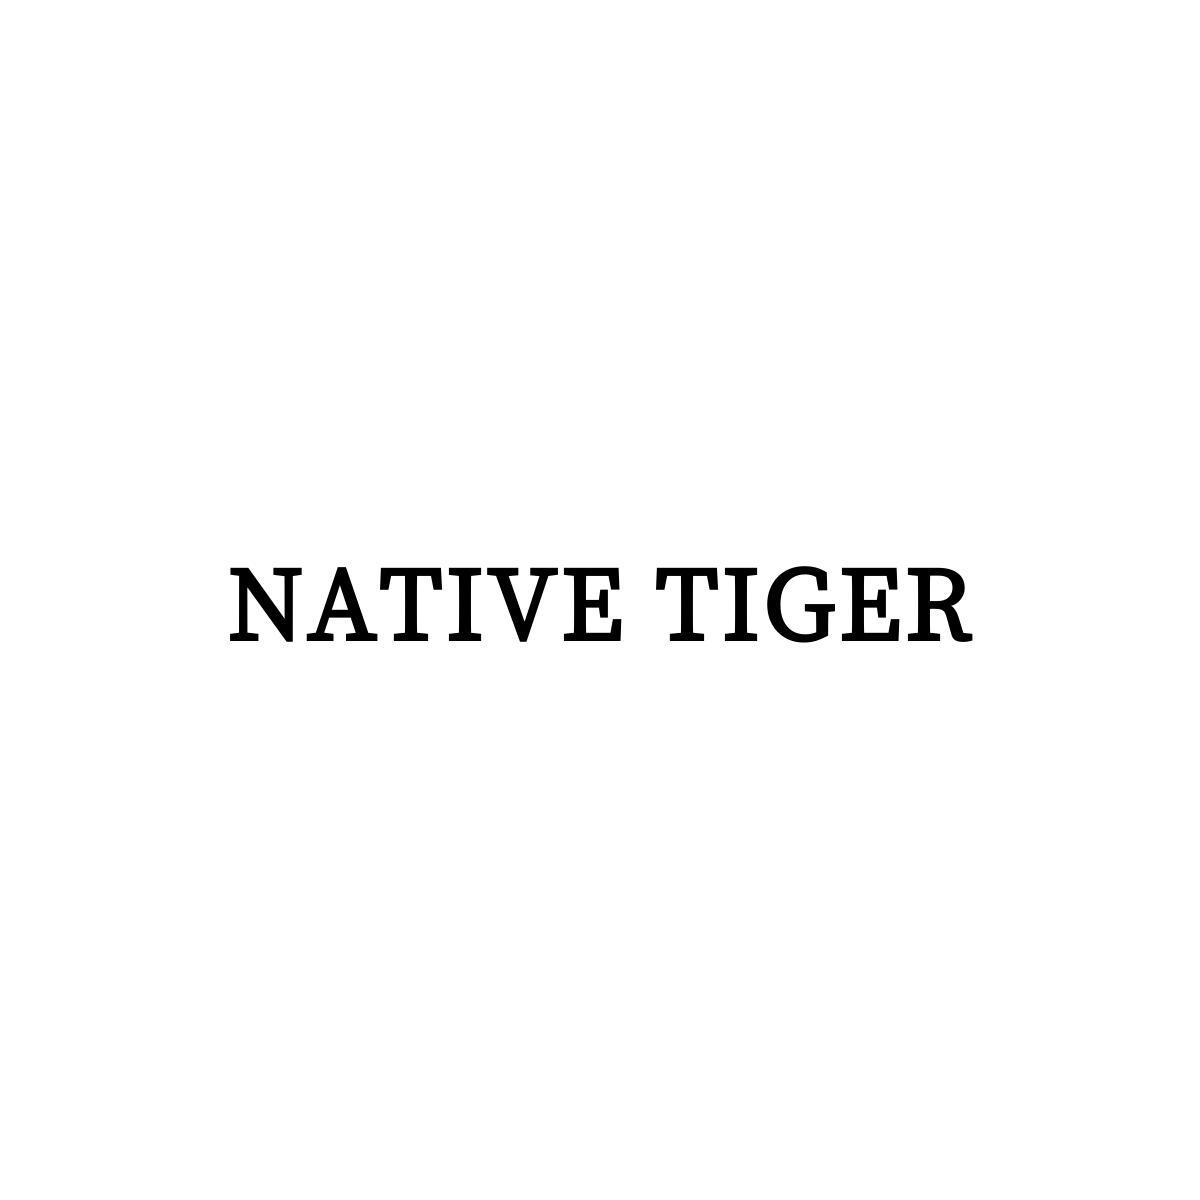 NATIVE TIGER